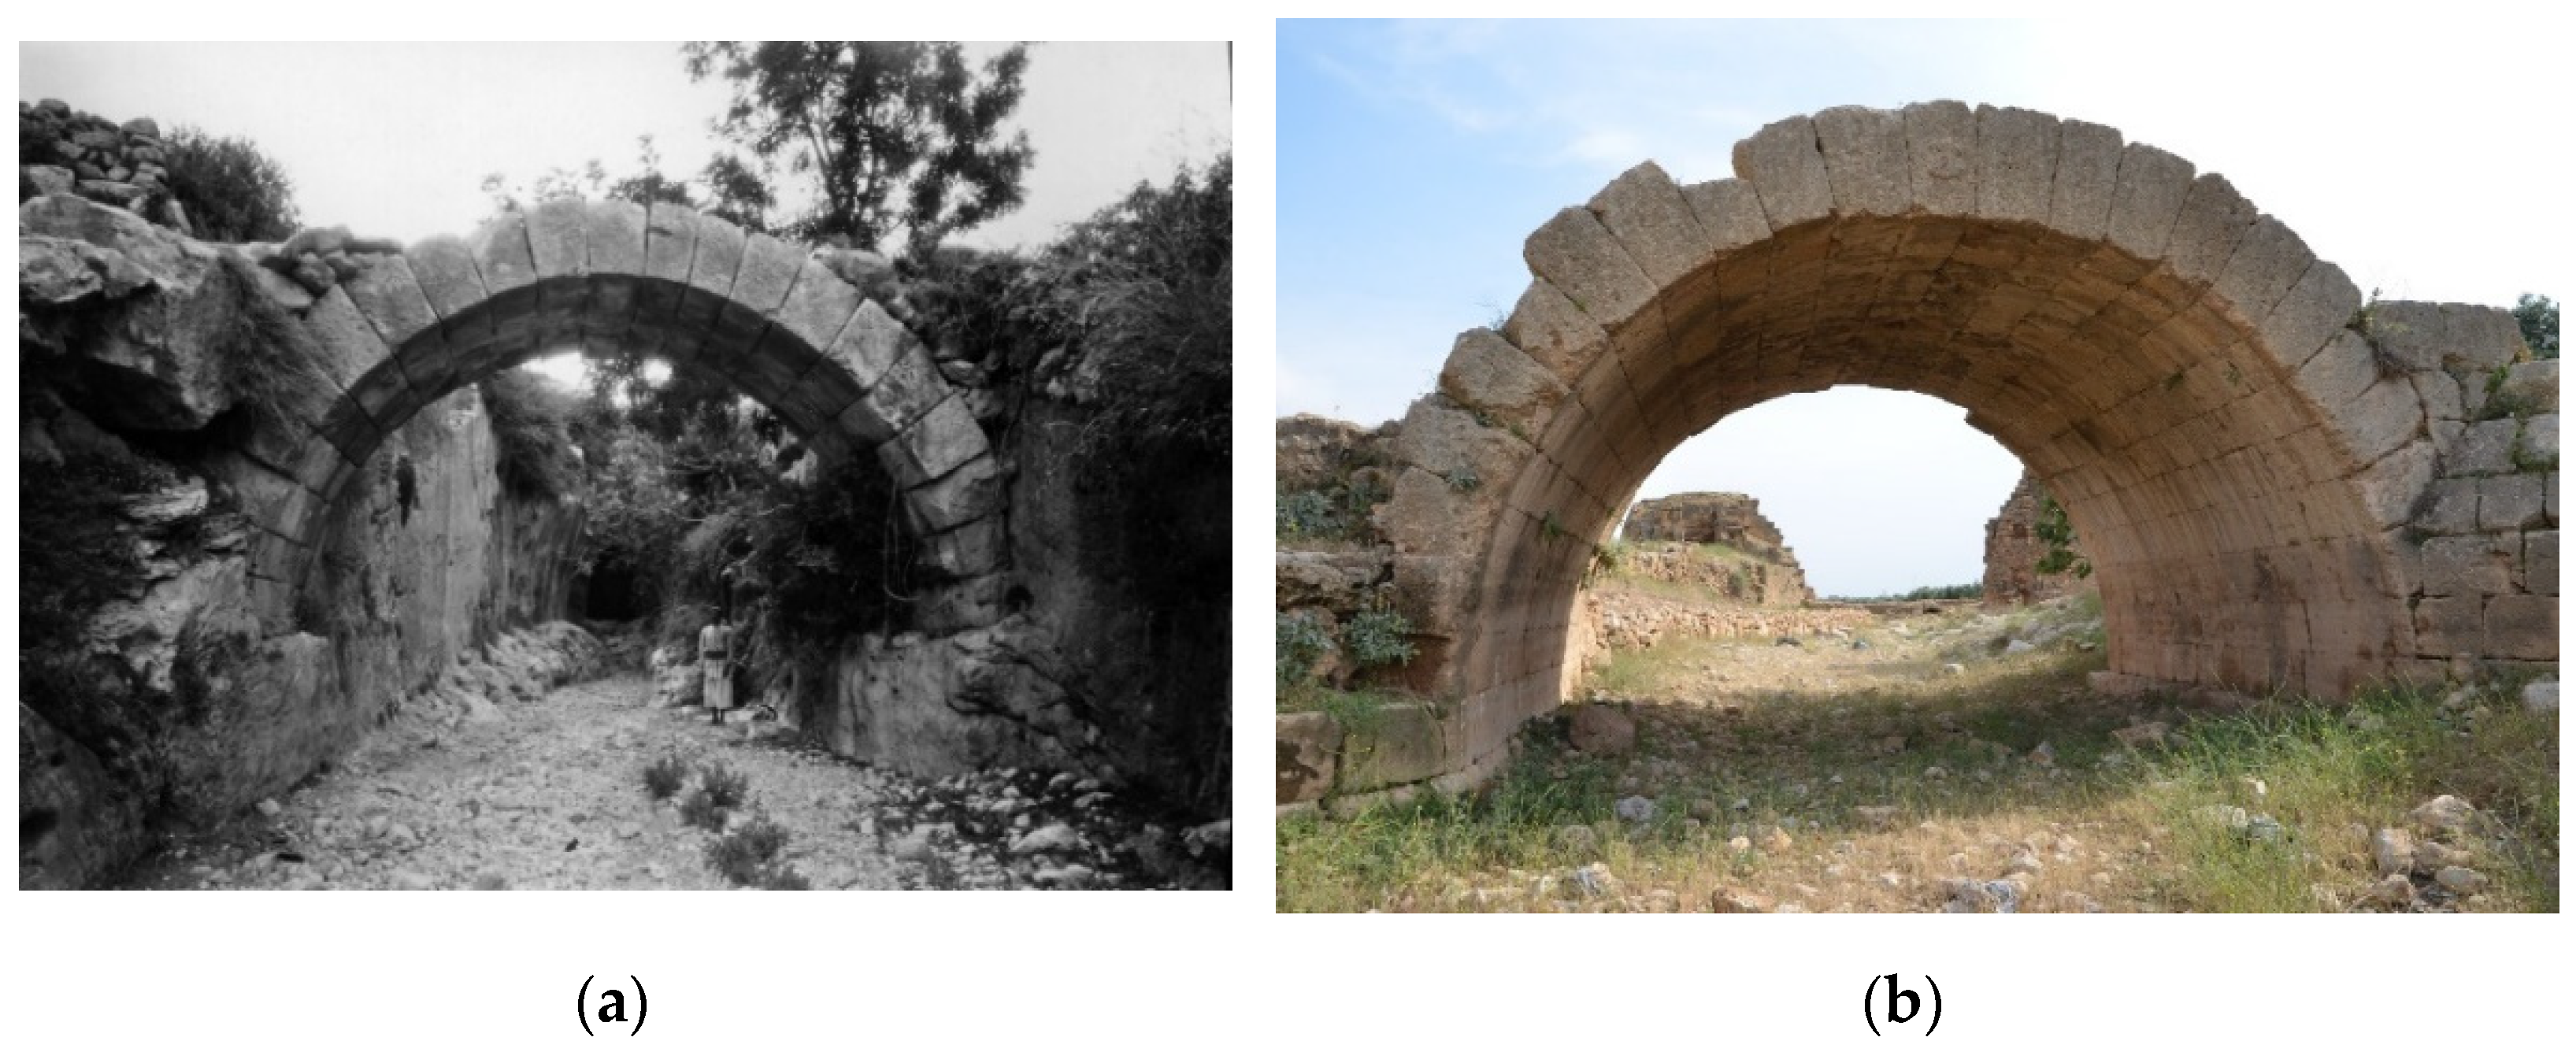 ancient masonry arches